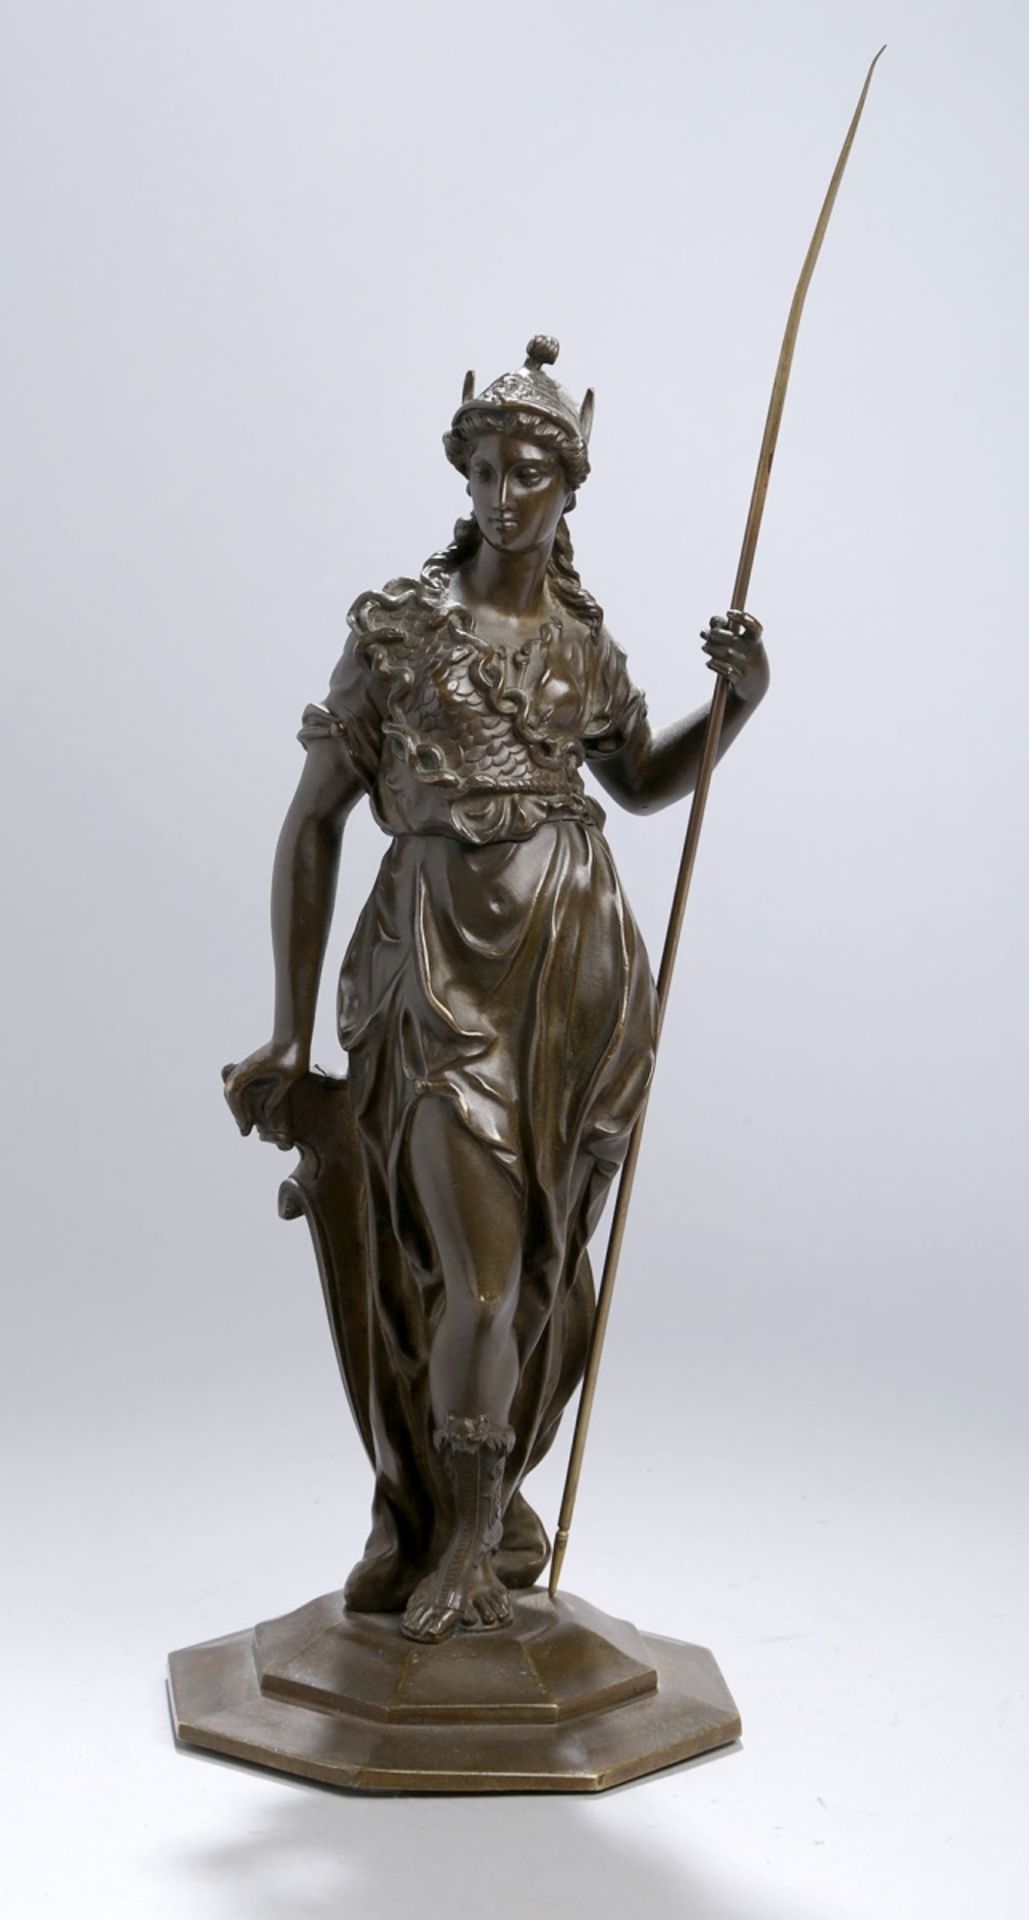 Bronze-Plastik, "Helena", anonymer Bildhauer, 2. Hälfte 19. Jh., vollplastische, stehendeDarste